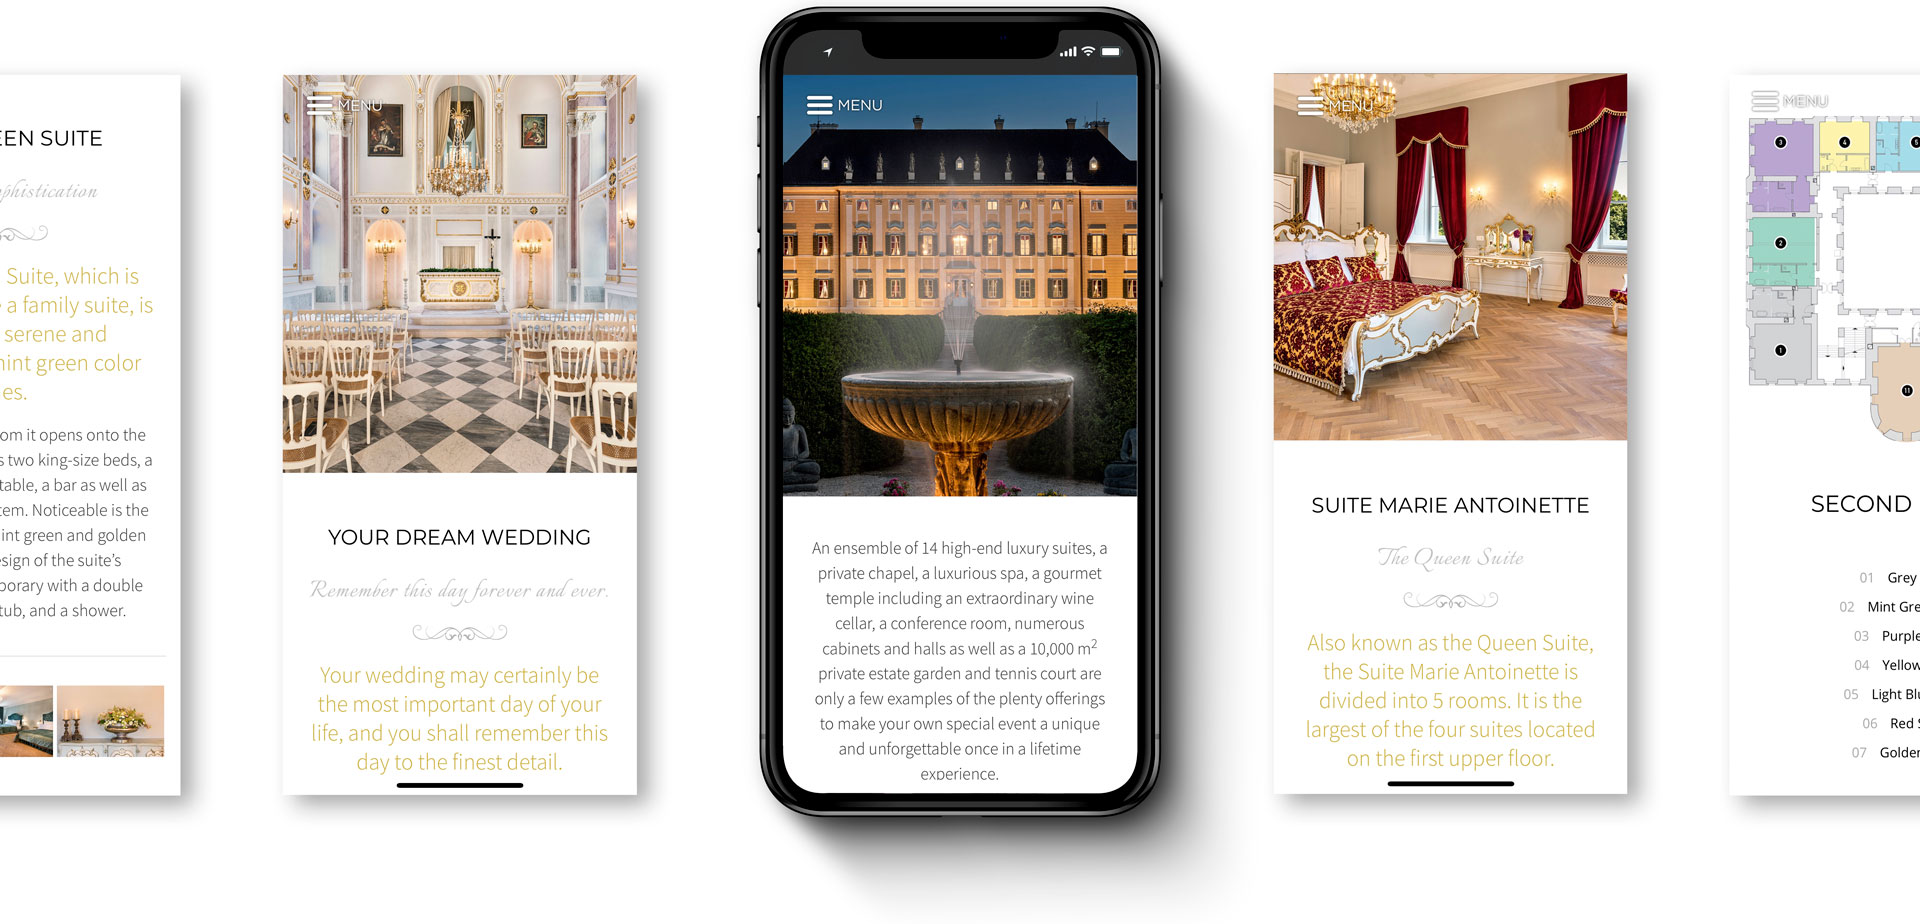 Château Petit Versailles web design for mobile devices